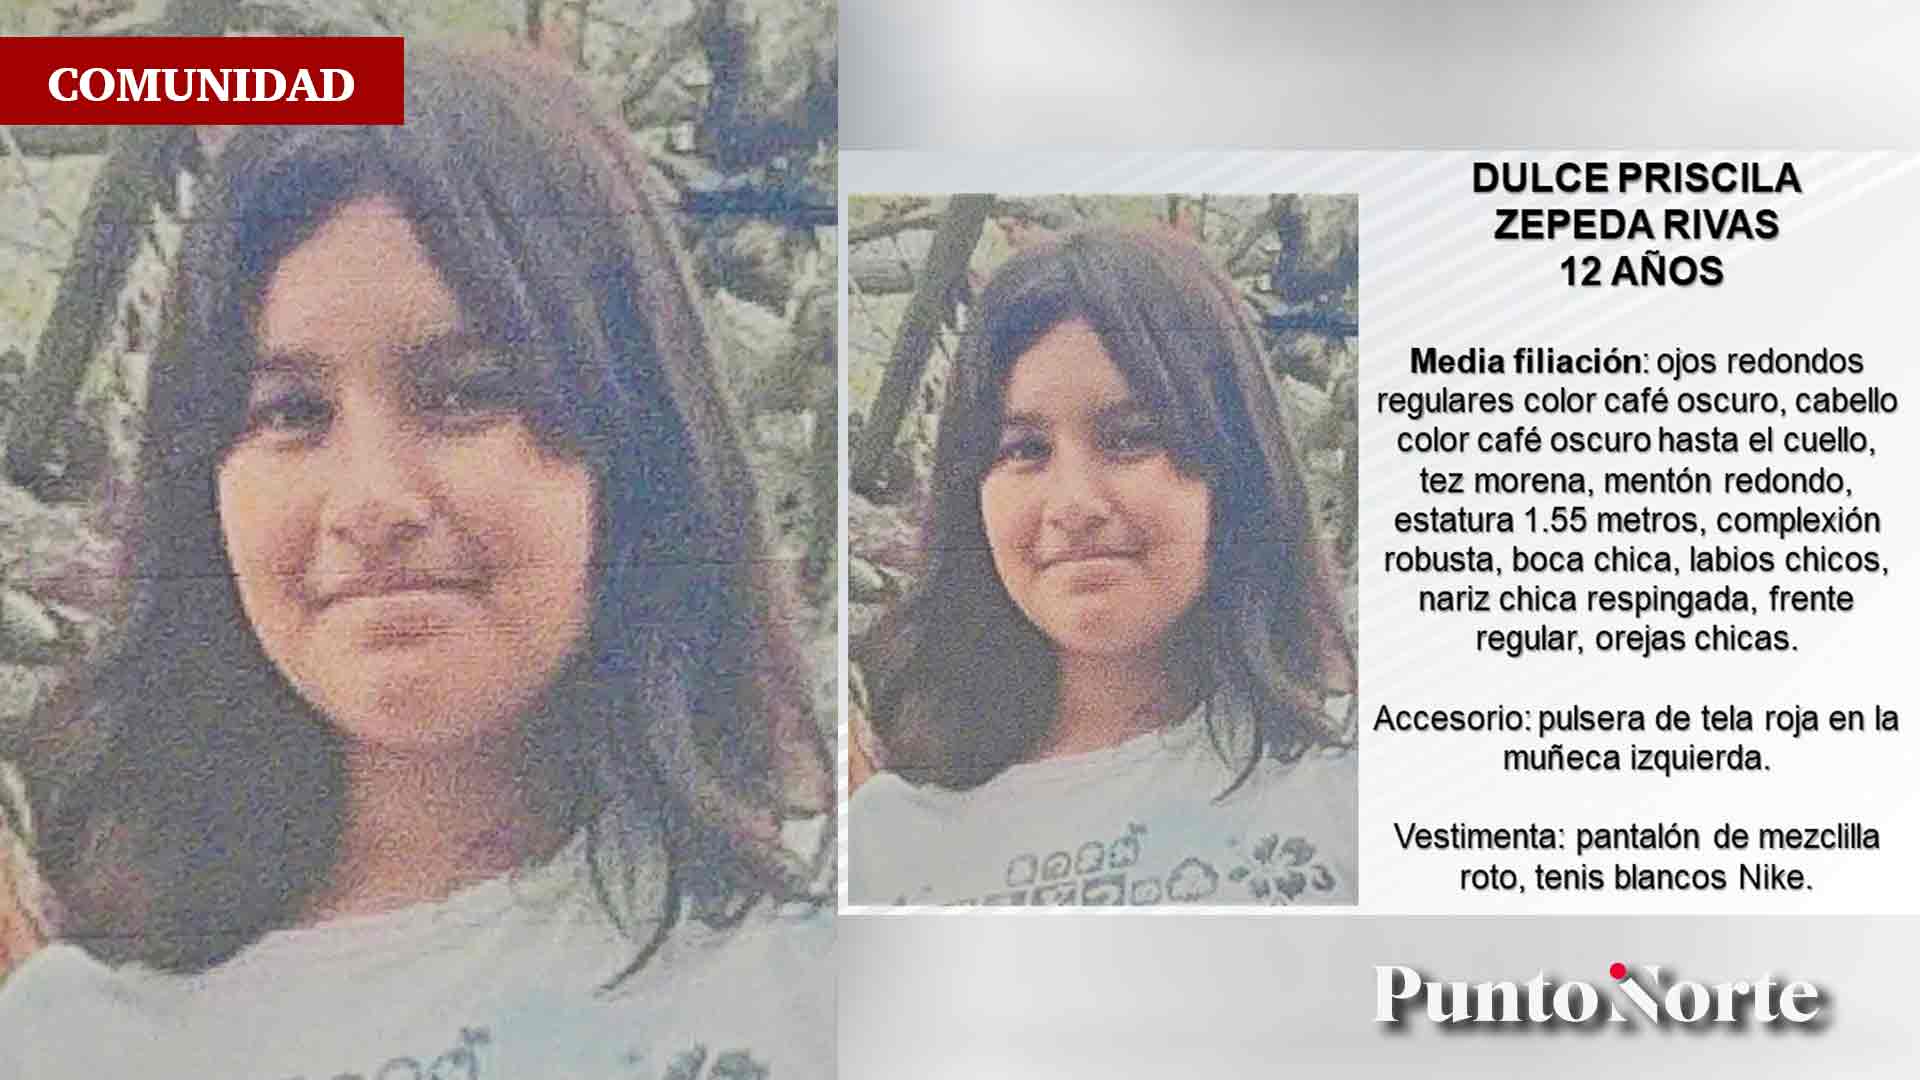 Colectivo encuentra rastros de joven desaparecida - Noticias Rosarito